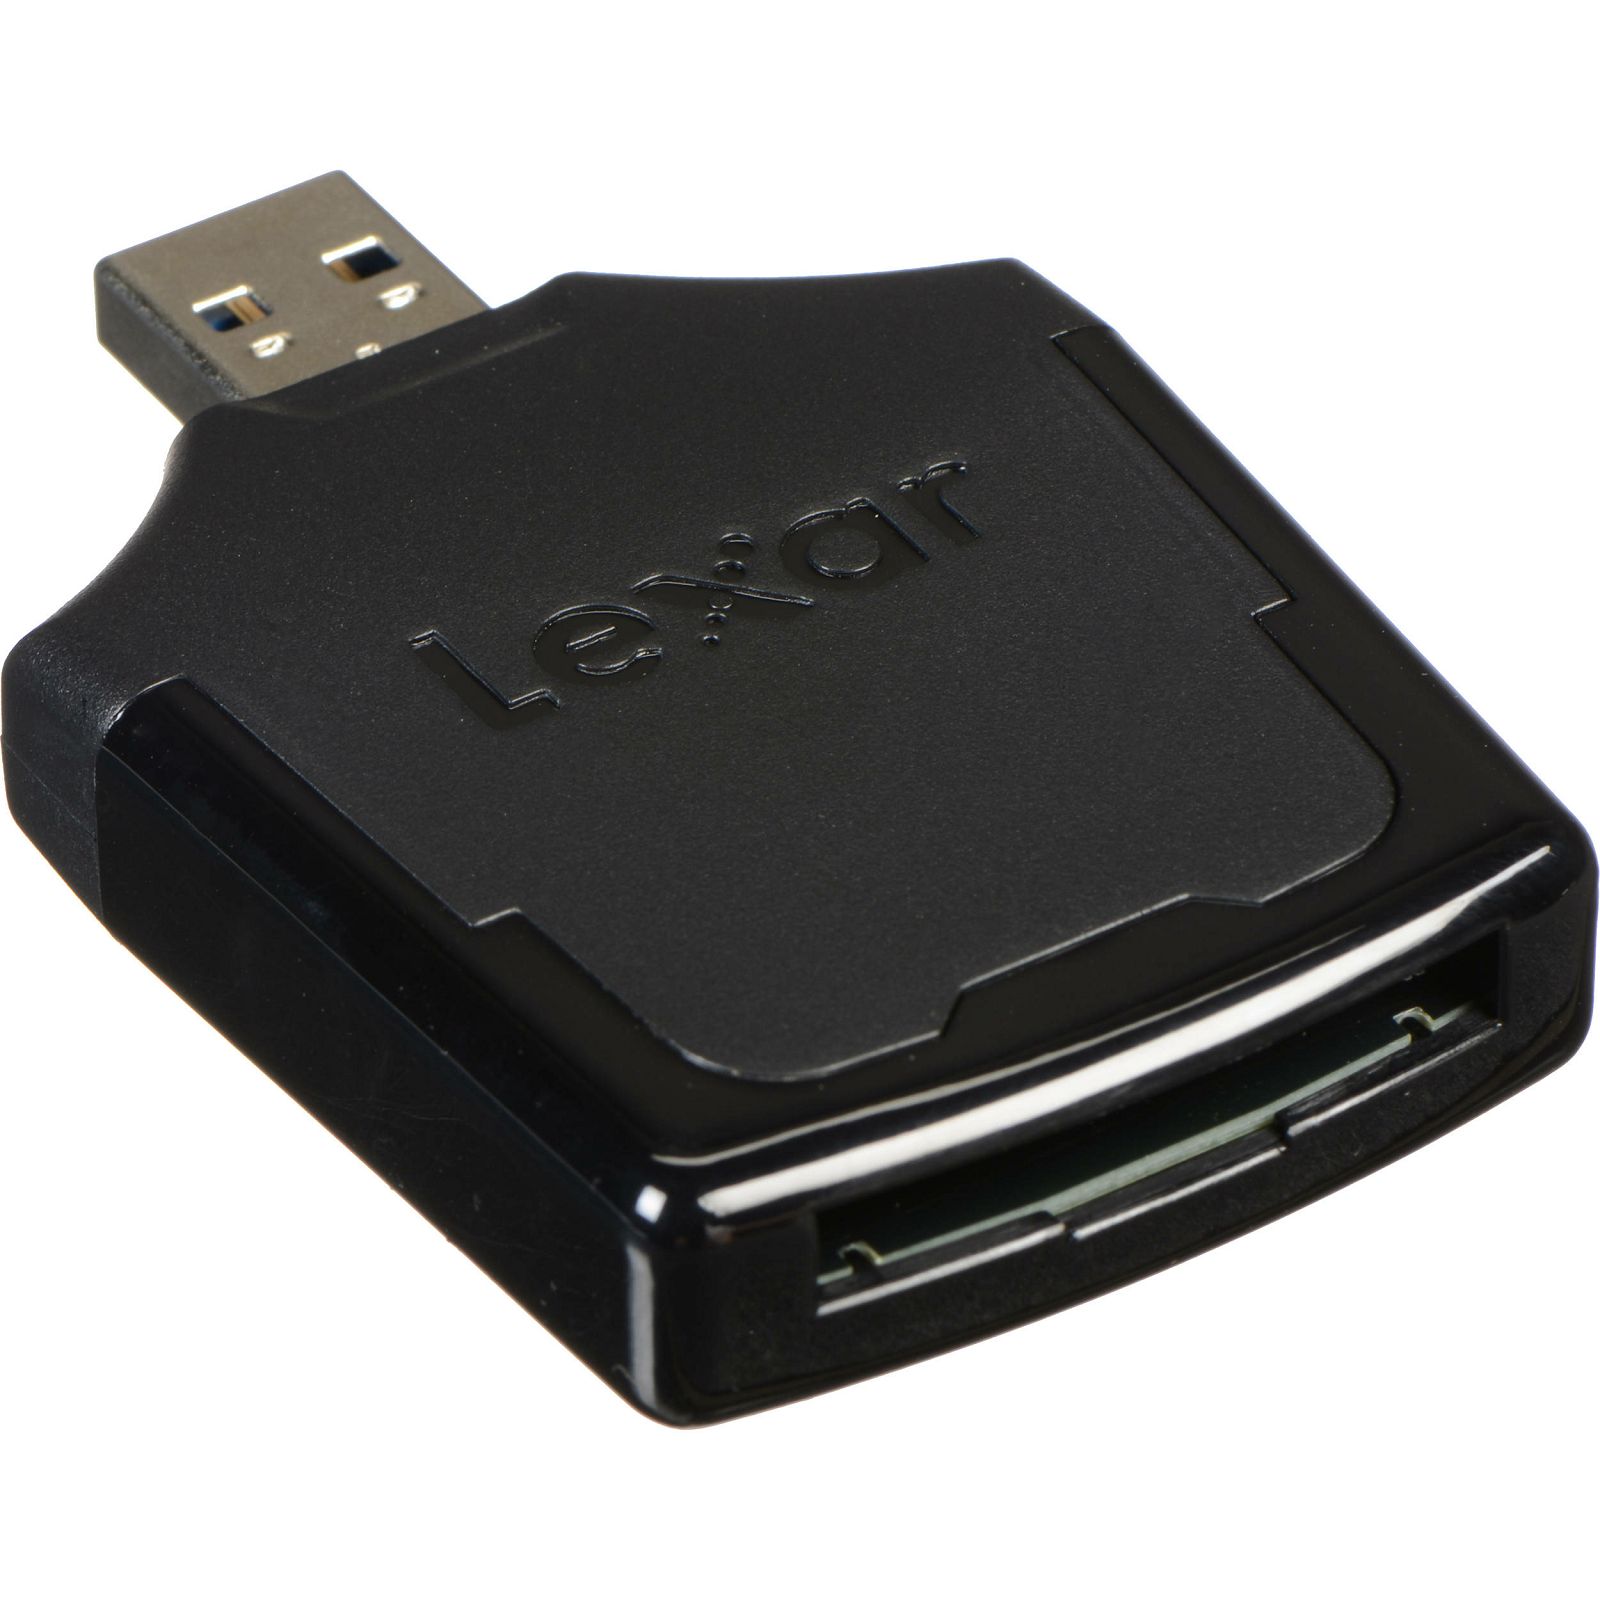 Lexar čitač kartica USB 3.0 XQD 2.0 Reader Professional LRWXQDRBEU